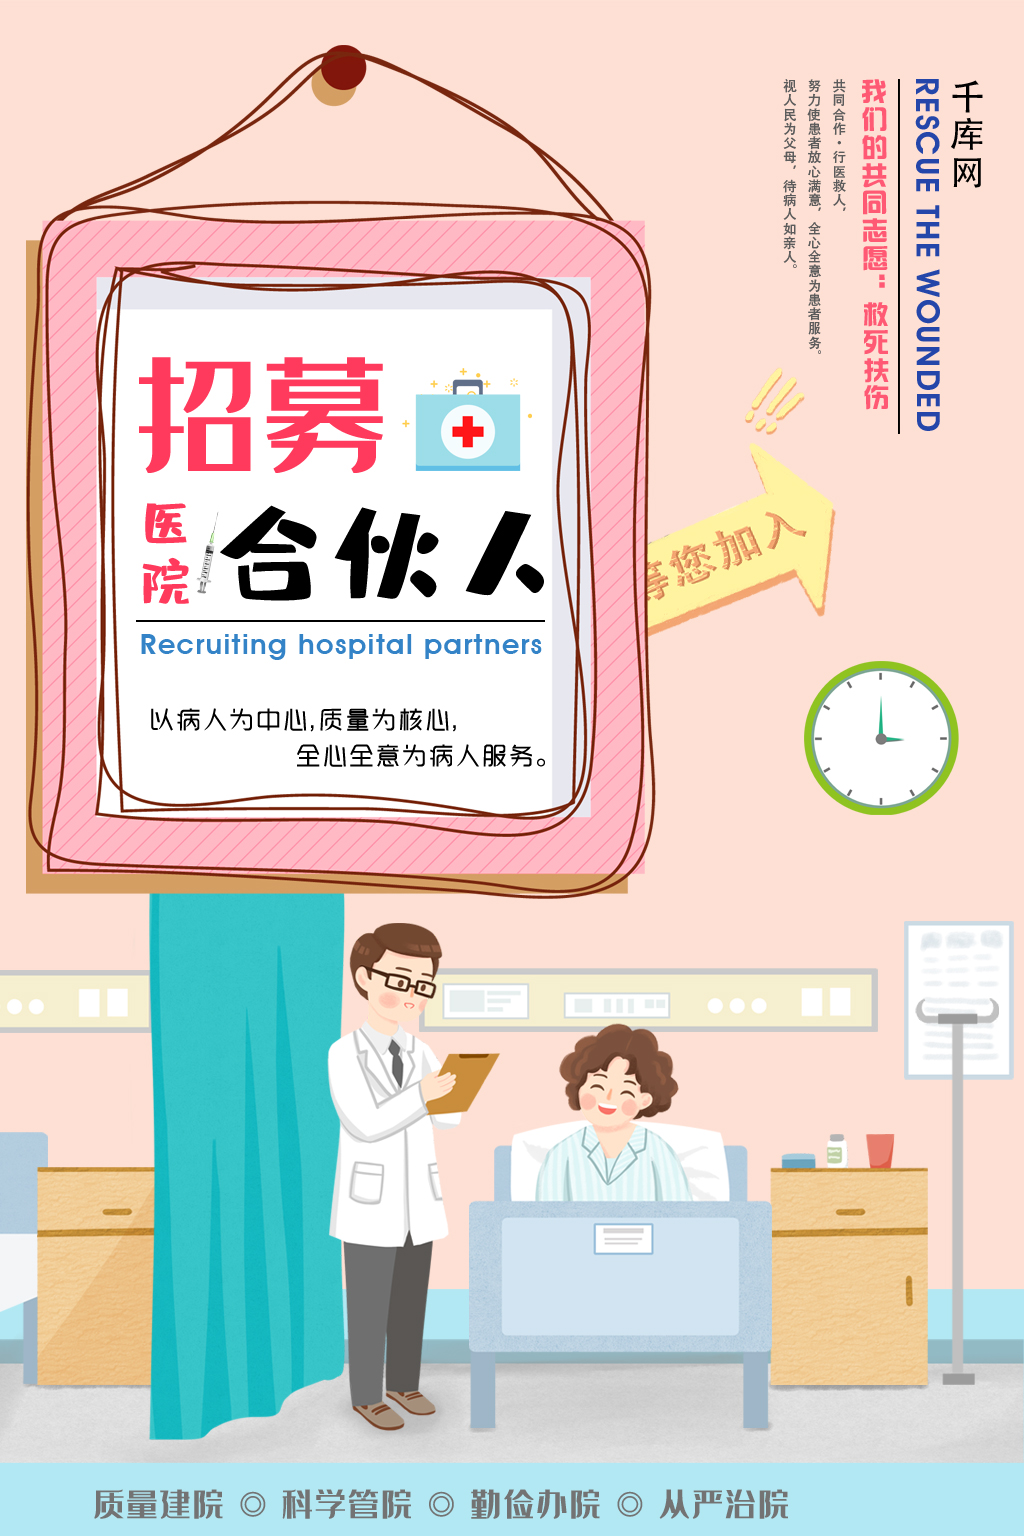 暖色调创意相框卡通医院背景招募医院合伙人海报图片